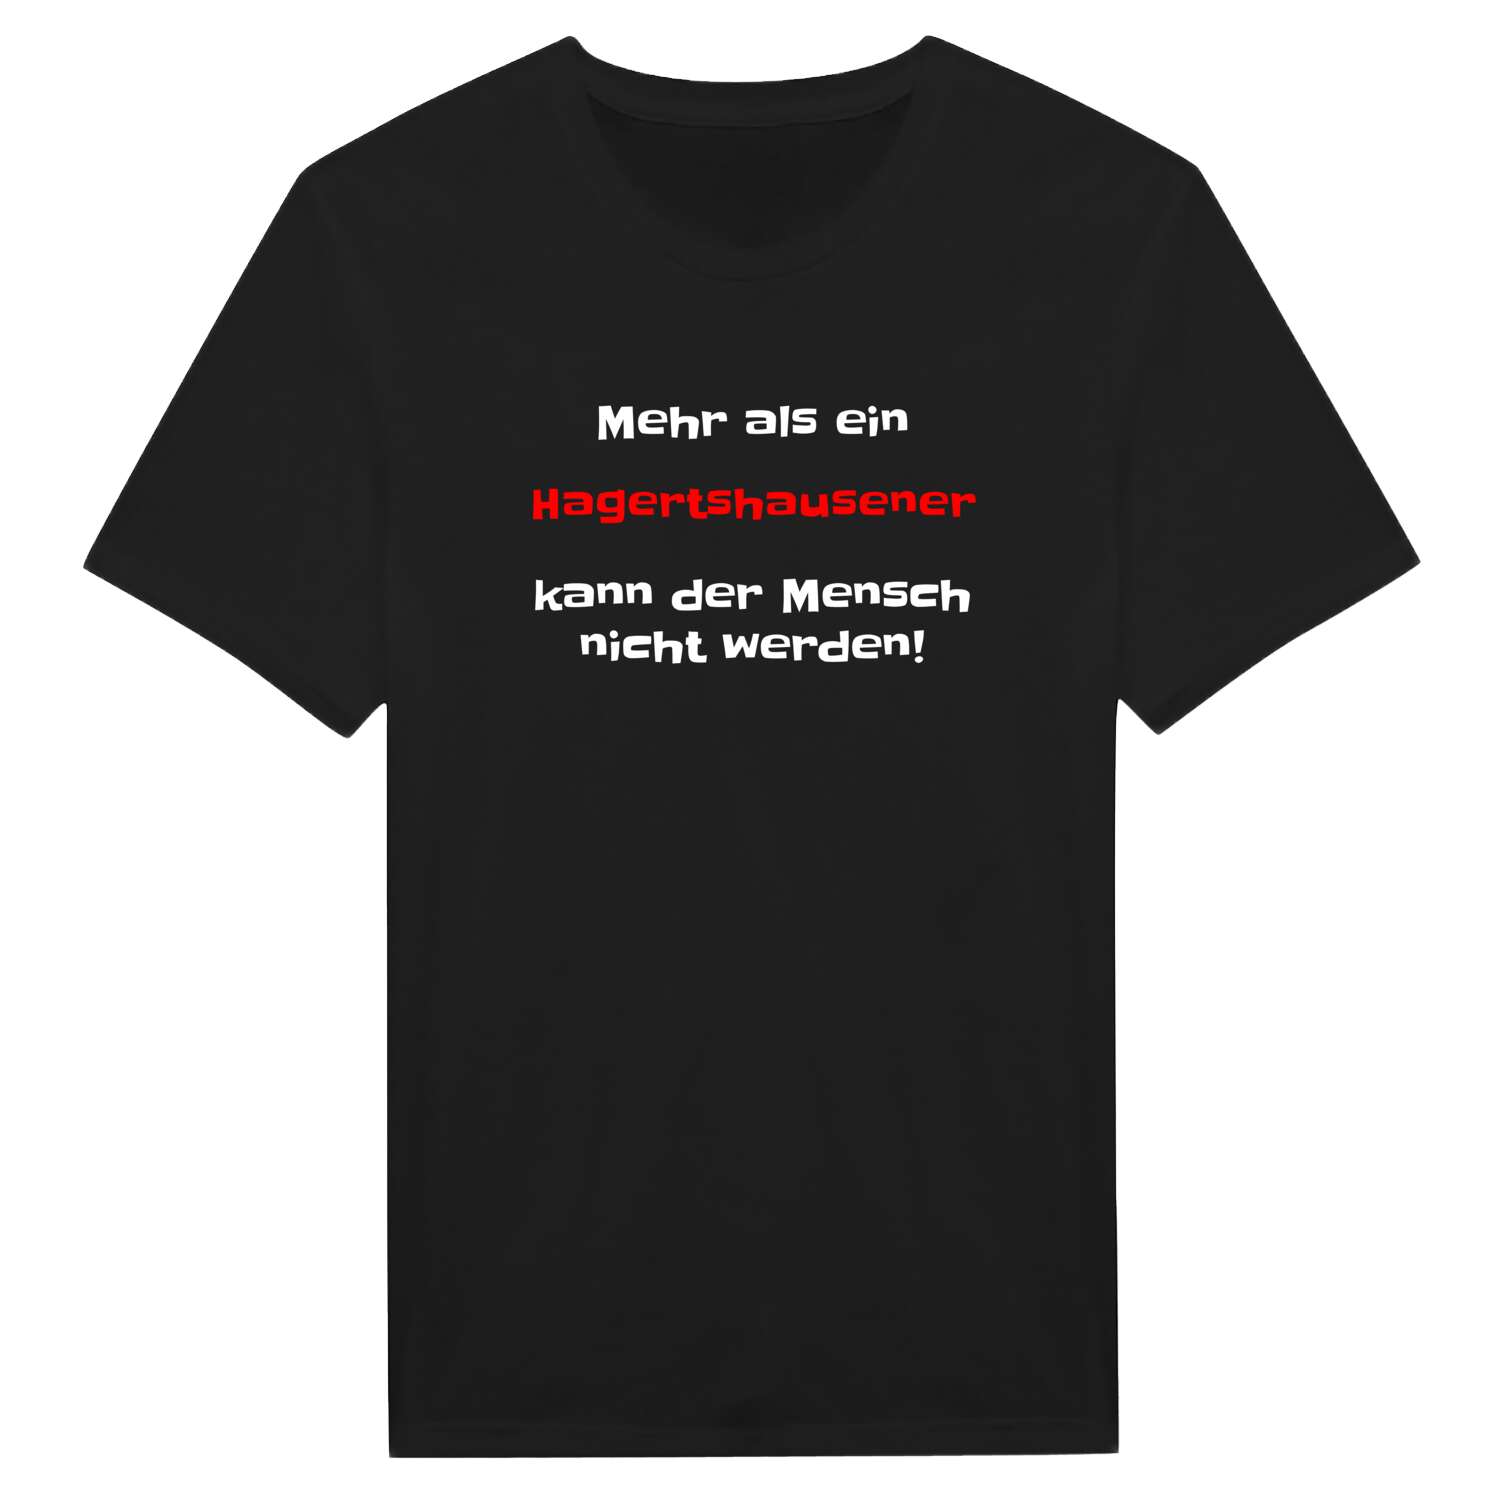 Hagertshausen T-Shirt »Mehr als ein«